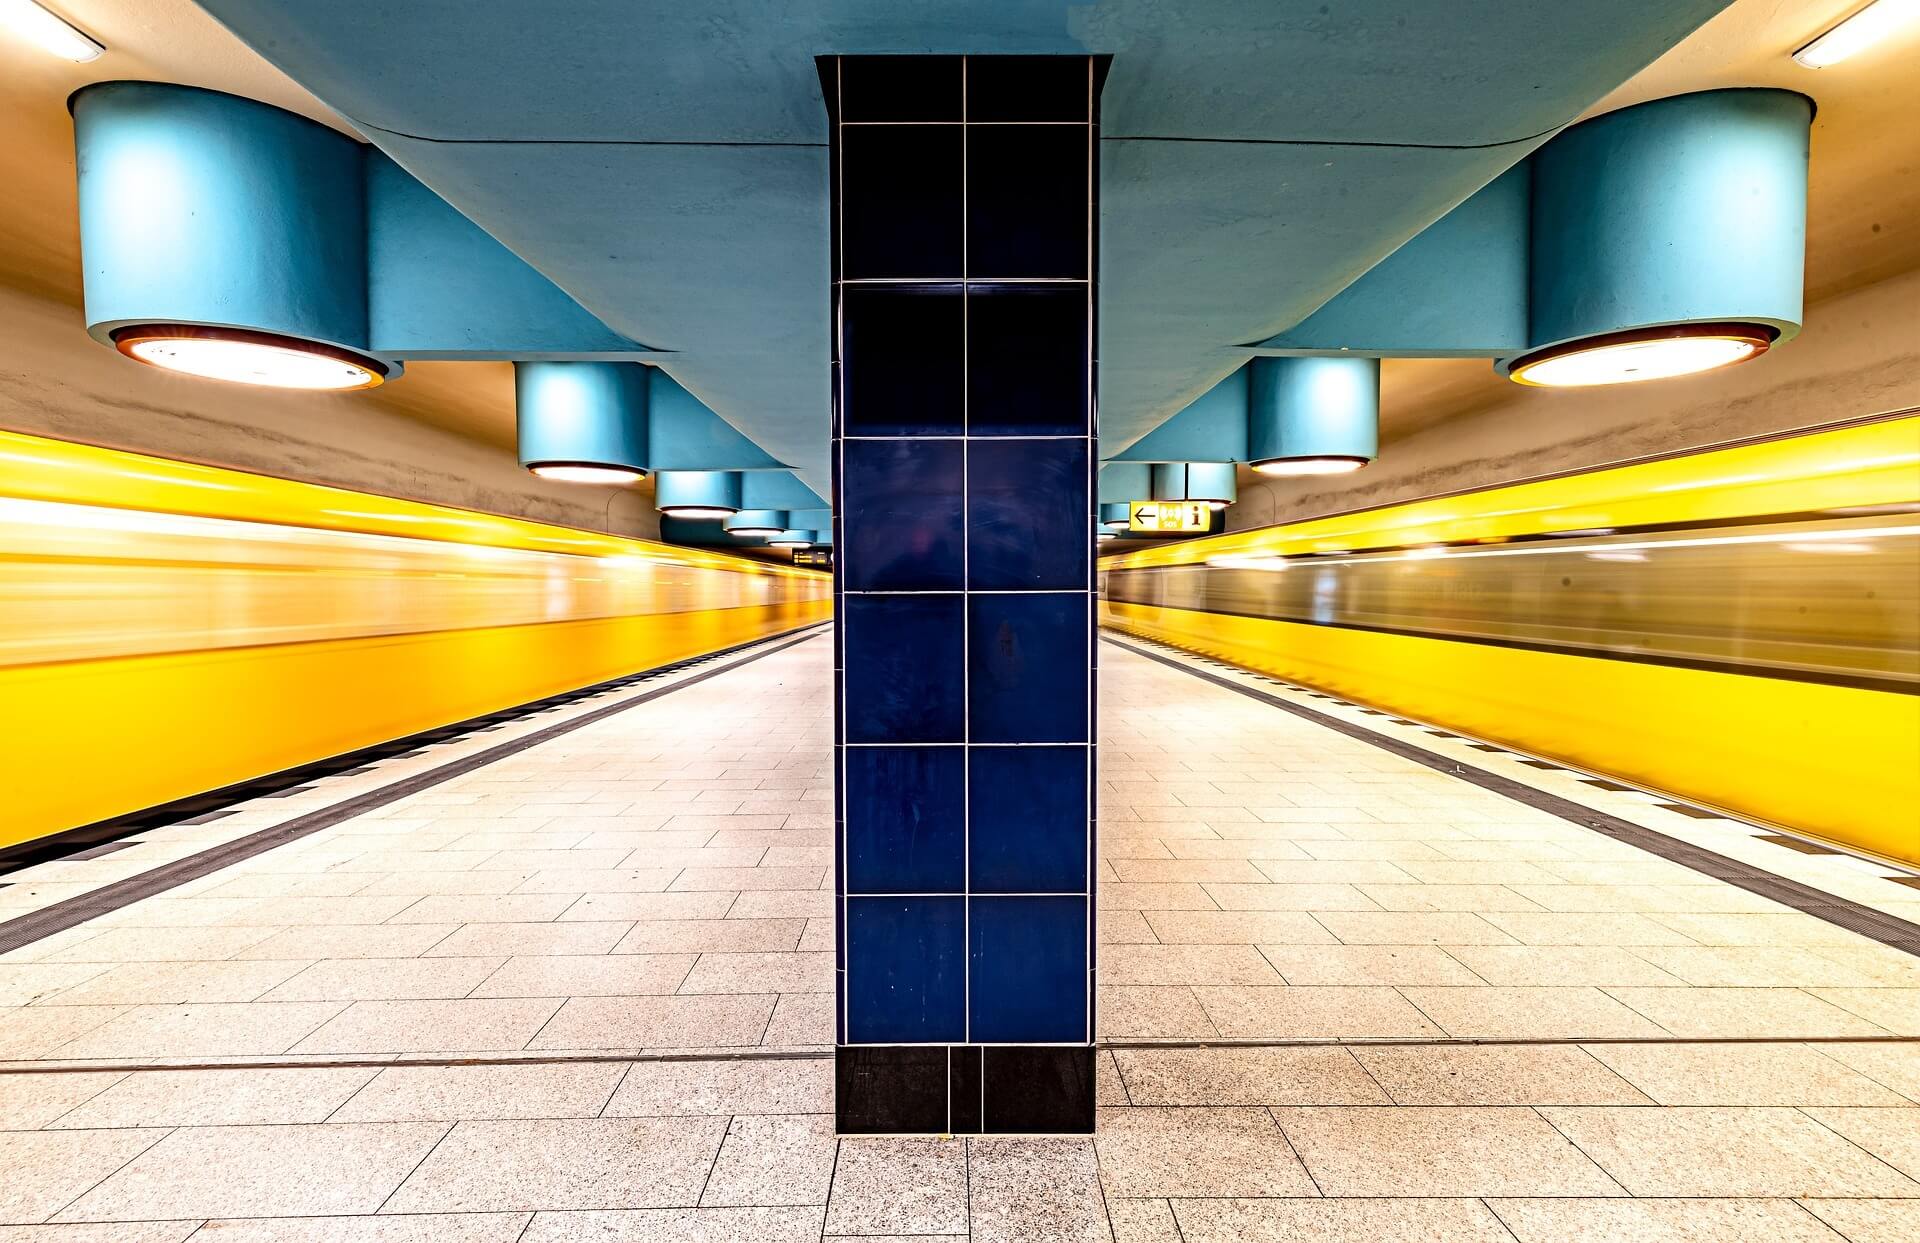 Berlin subway, yellow train